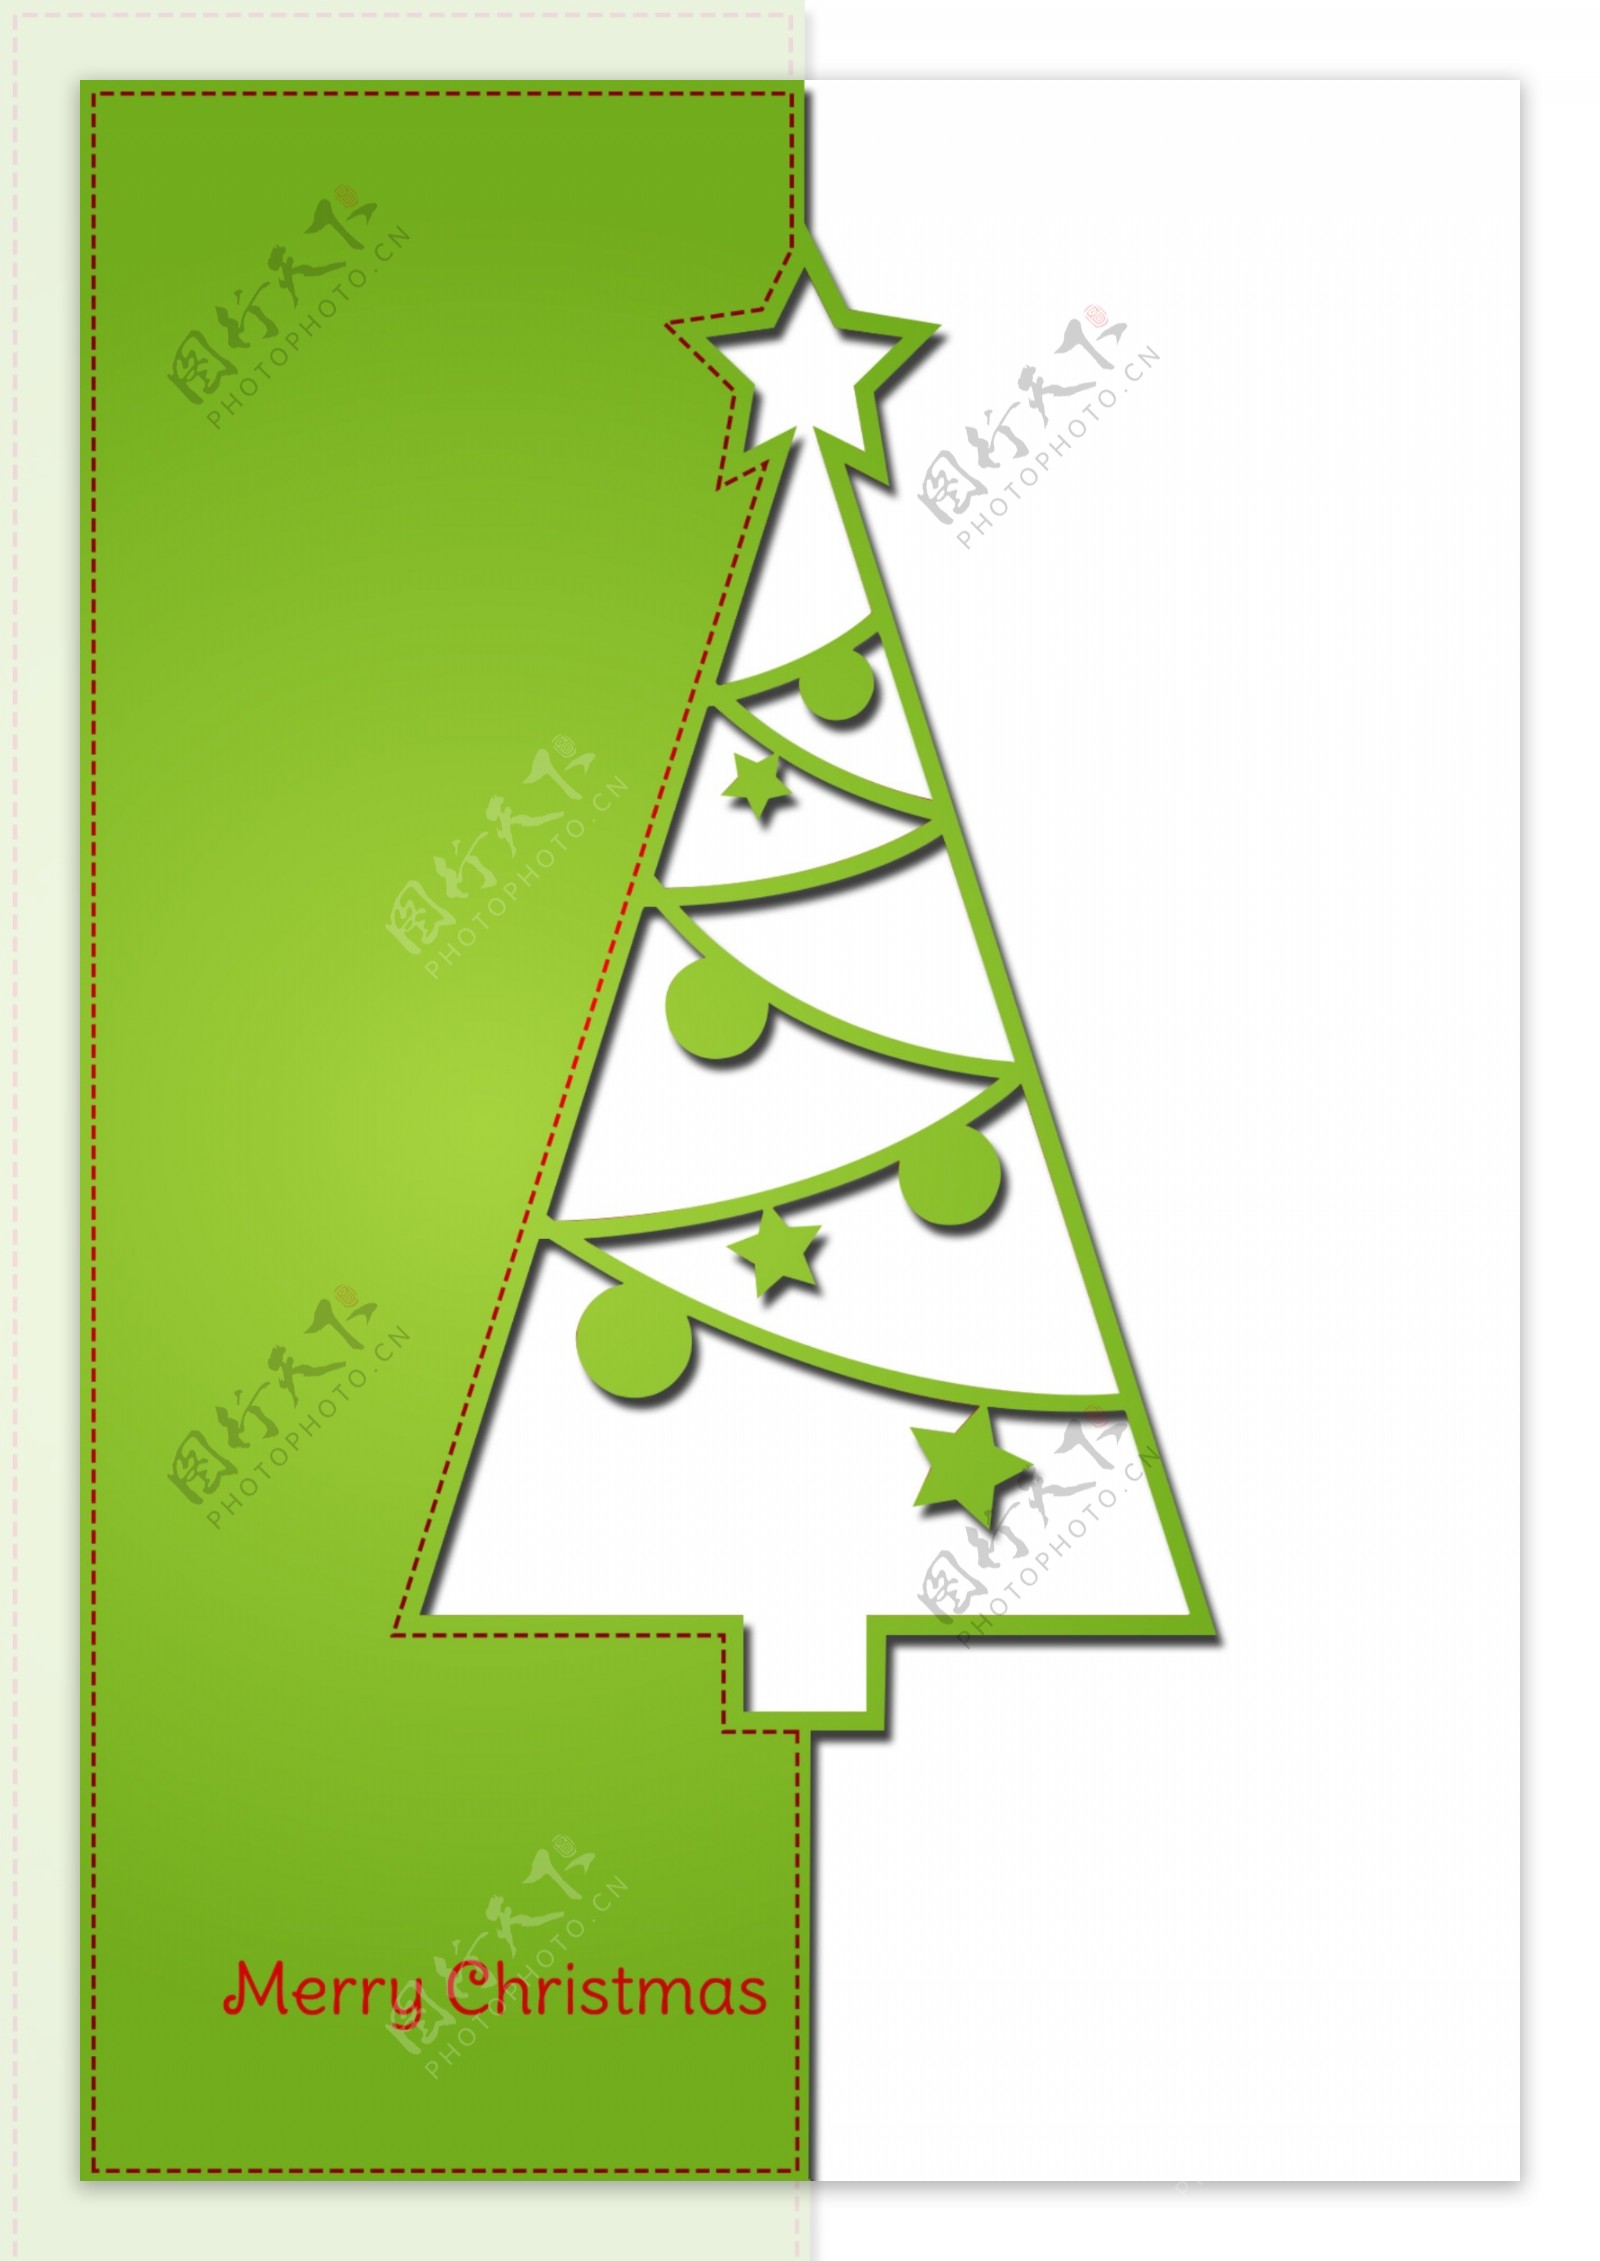 圣诞节圣诞树剪纸图形